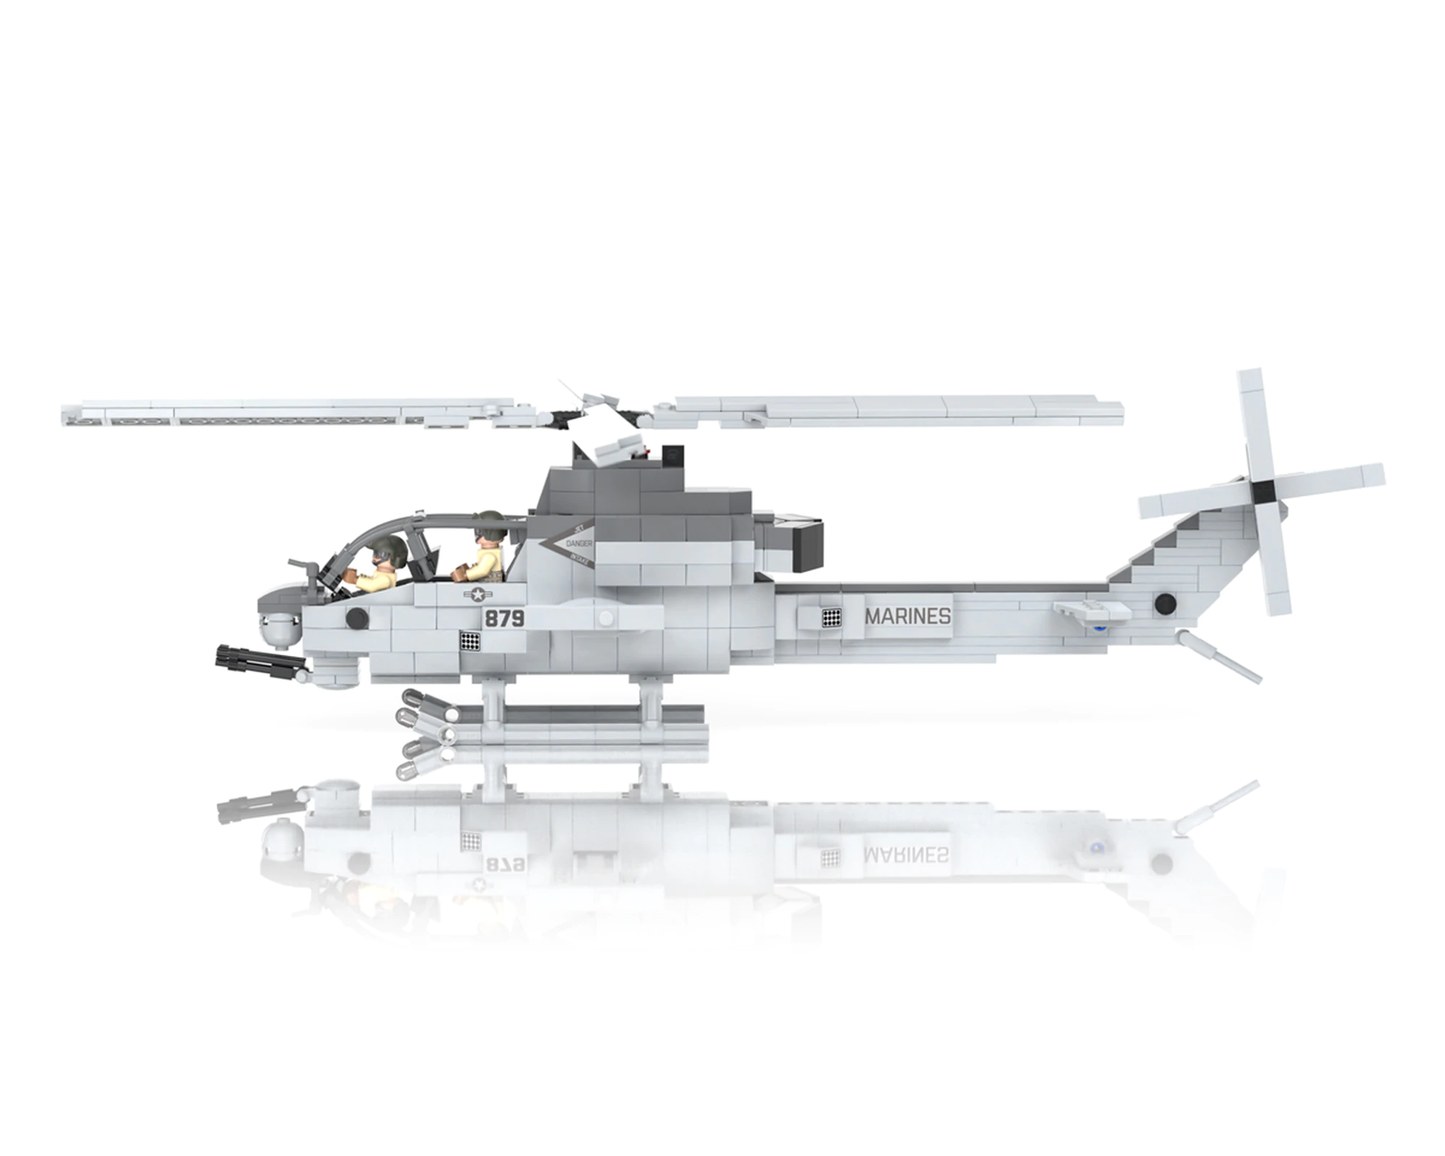 AH-1Z Viper - Zulu Cobra Attack Helicopter - MOMCOM inc.